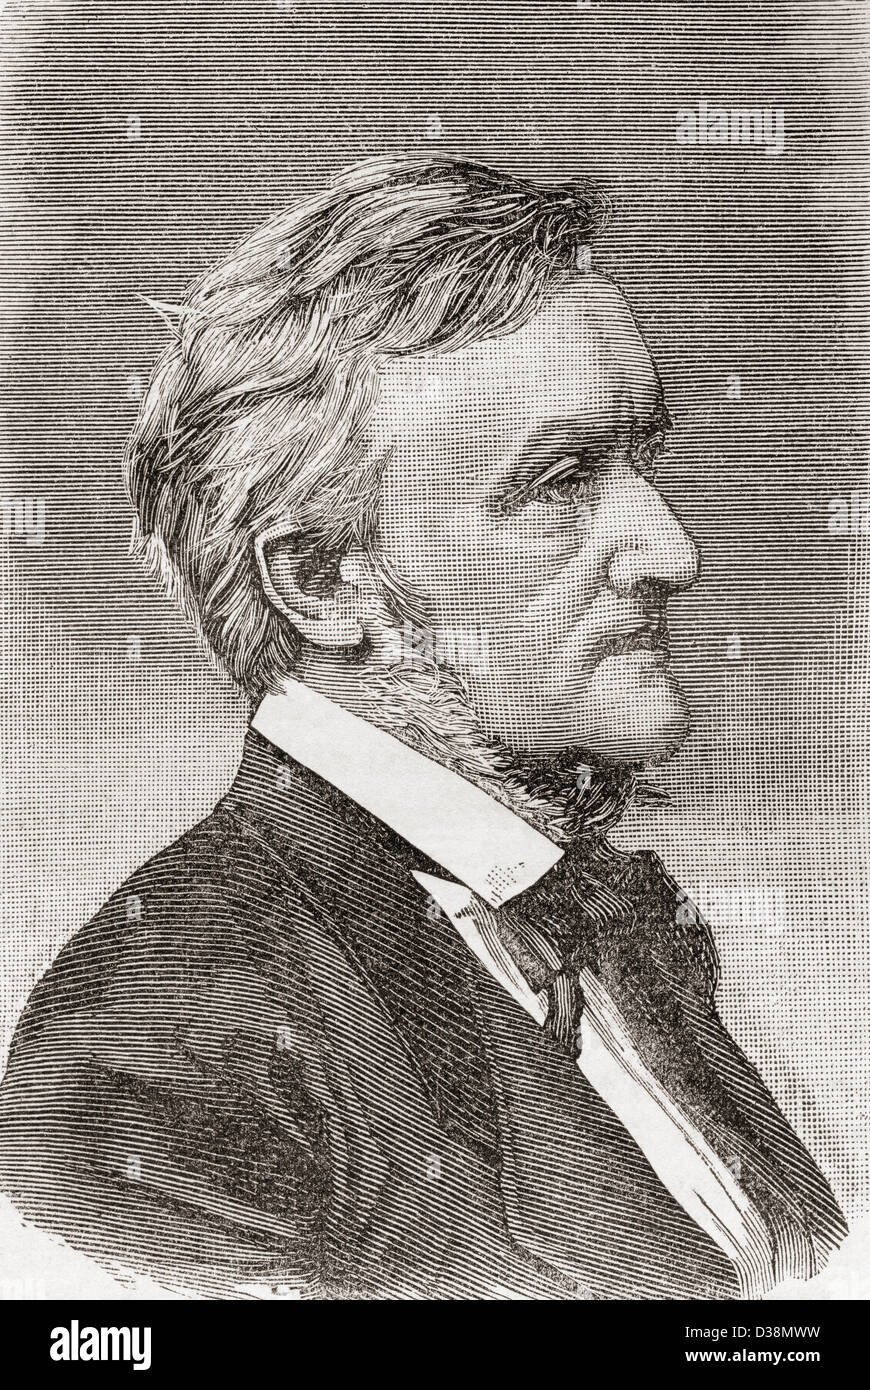 Wilhelm Richard Wagner, 1813-1883. Deutscher Komponist, Theaterdirektor, Polemiker und Dirigent. Stockfoto